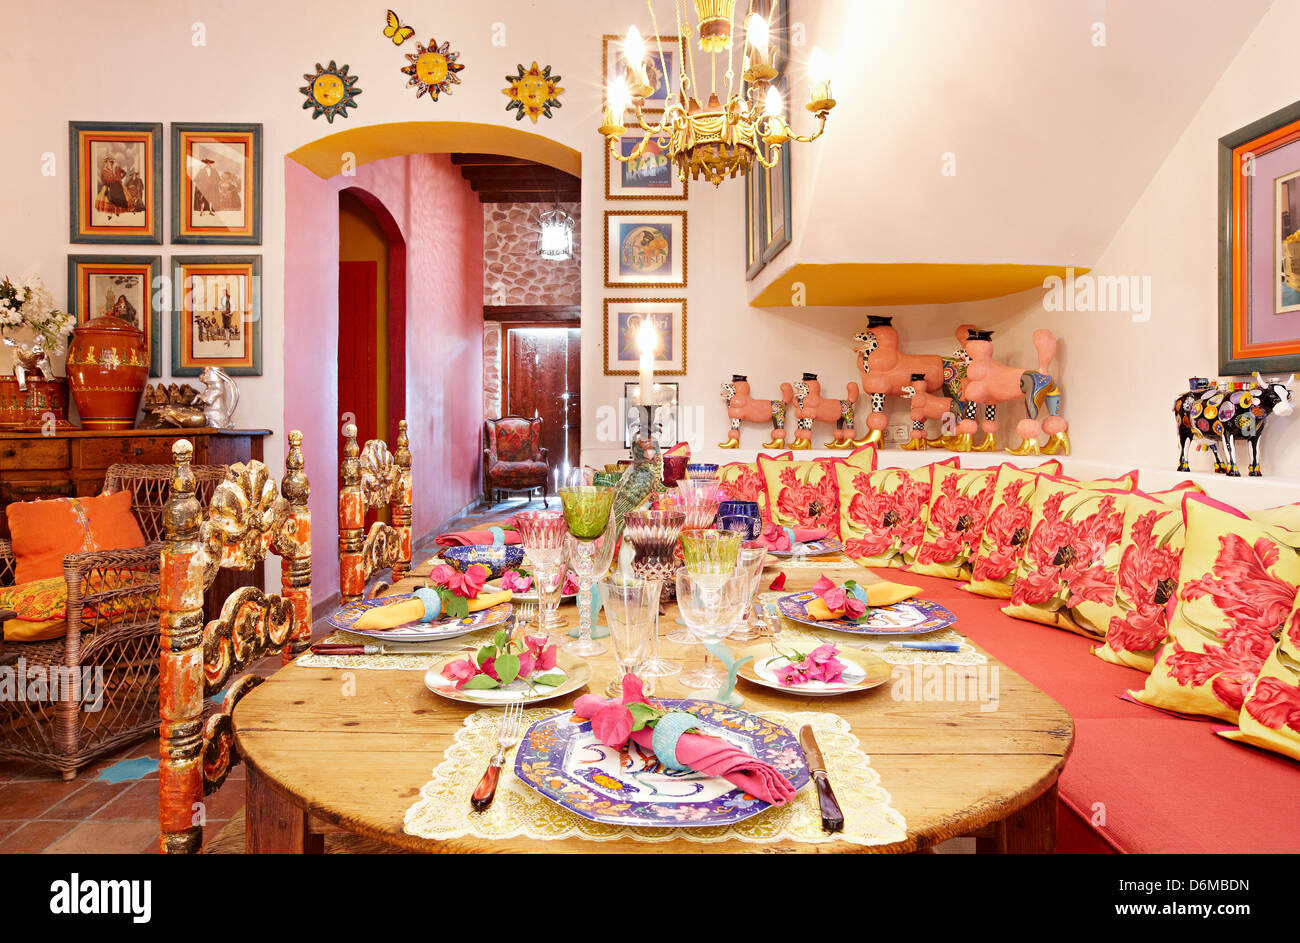 Küche verrückt Pudel Spaß helle Farben Beverly Feldman Schuh Designer Haus Alicante Spanien Stockfoto